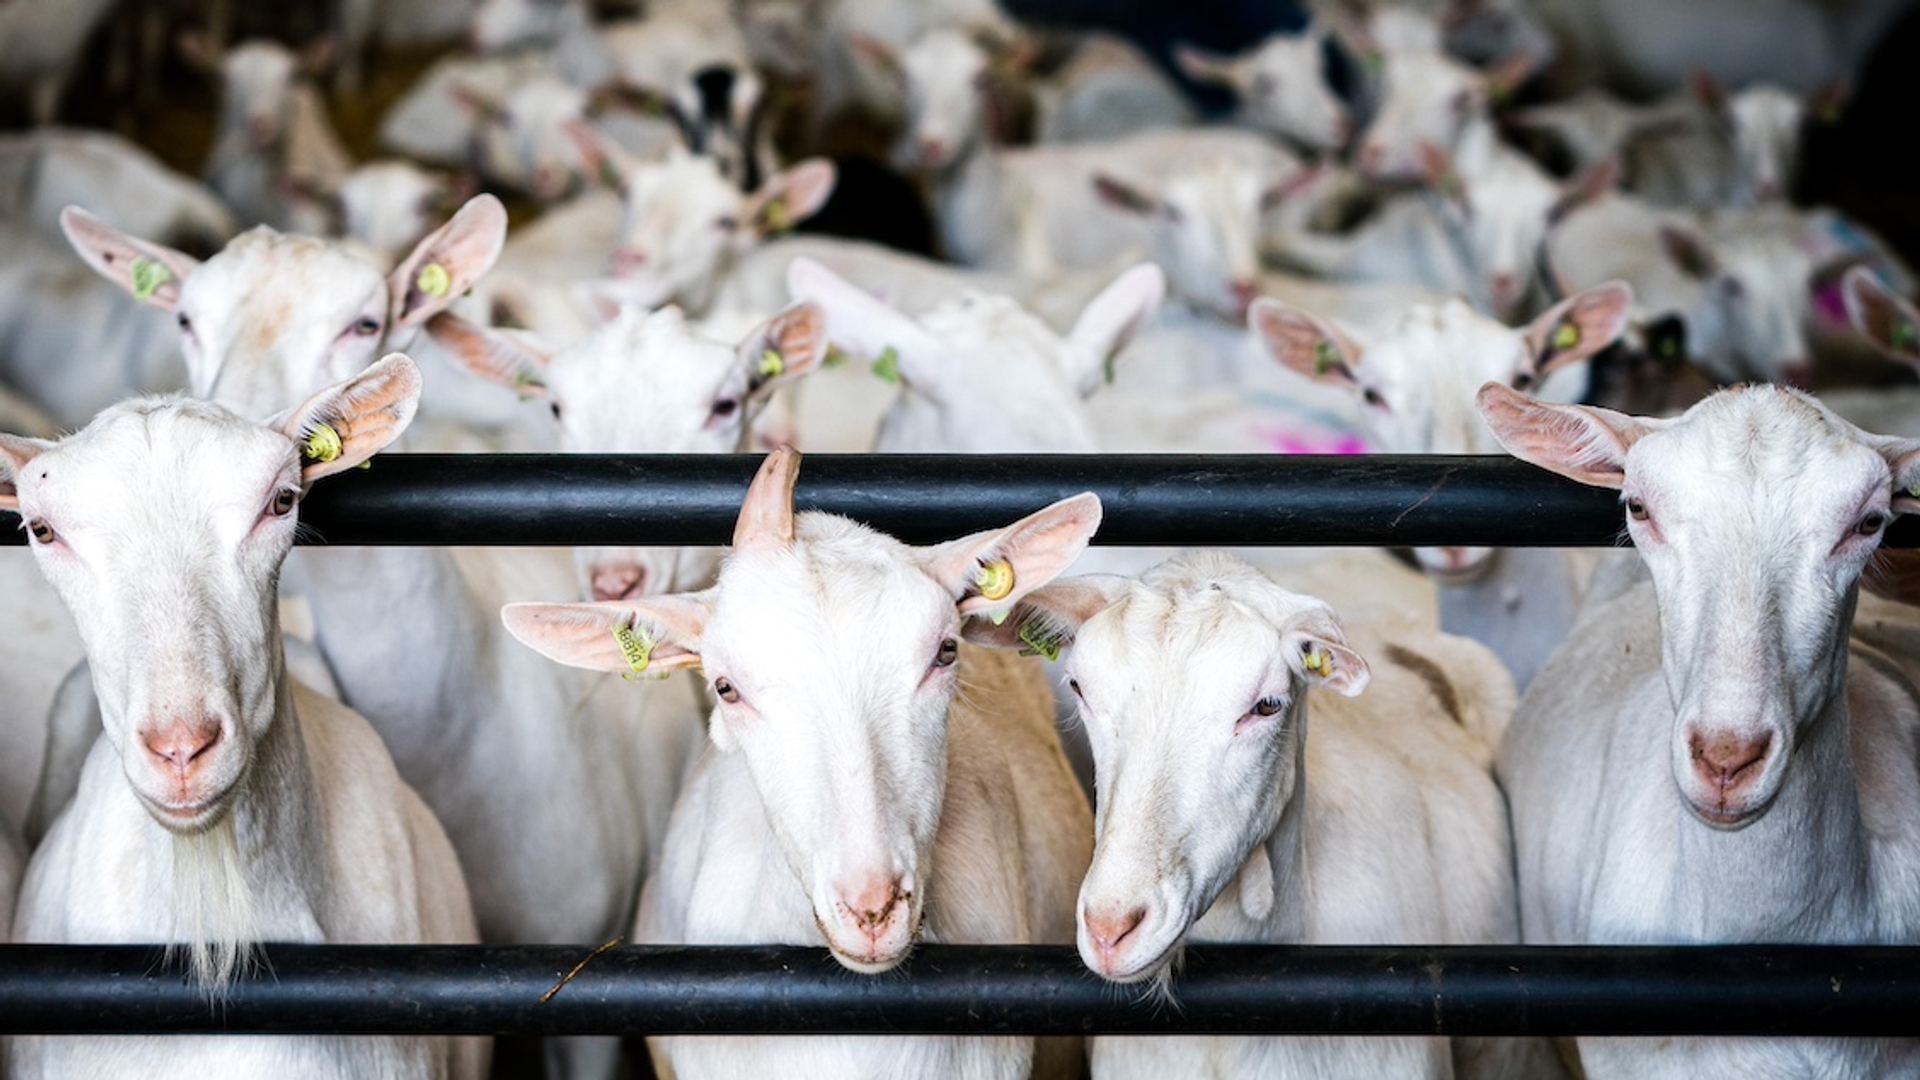 Afbeelding van Dierwaardige veehouderij kan veel leren van dierproeven